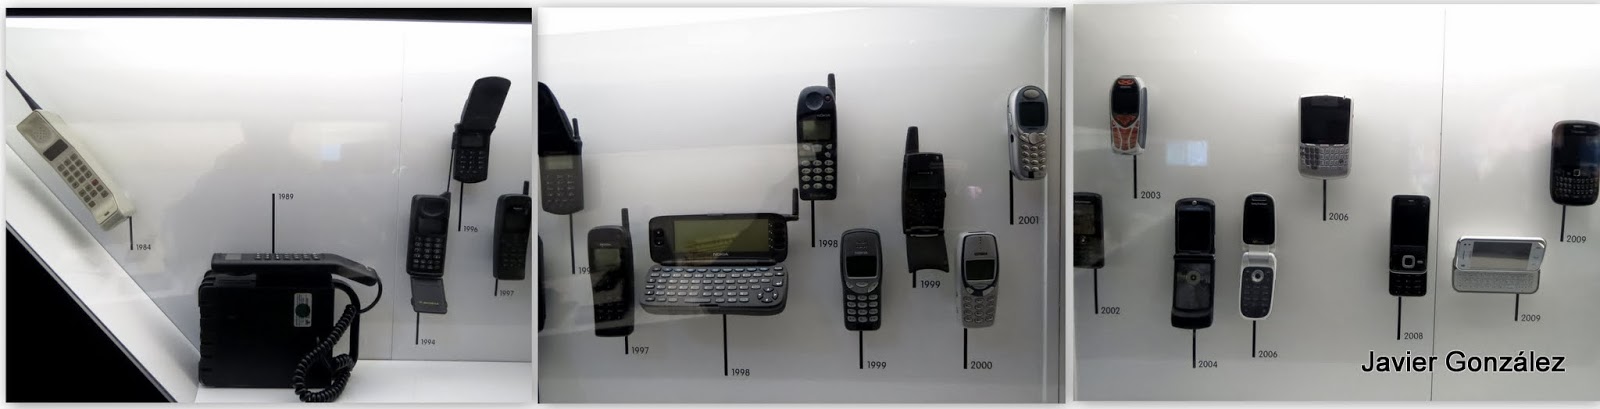 Evolución del teléfono móvil hasta nuestros días Evolution of mobile phone to the present day